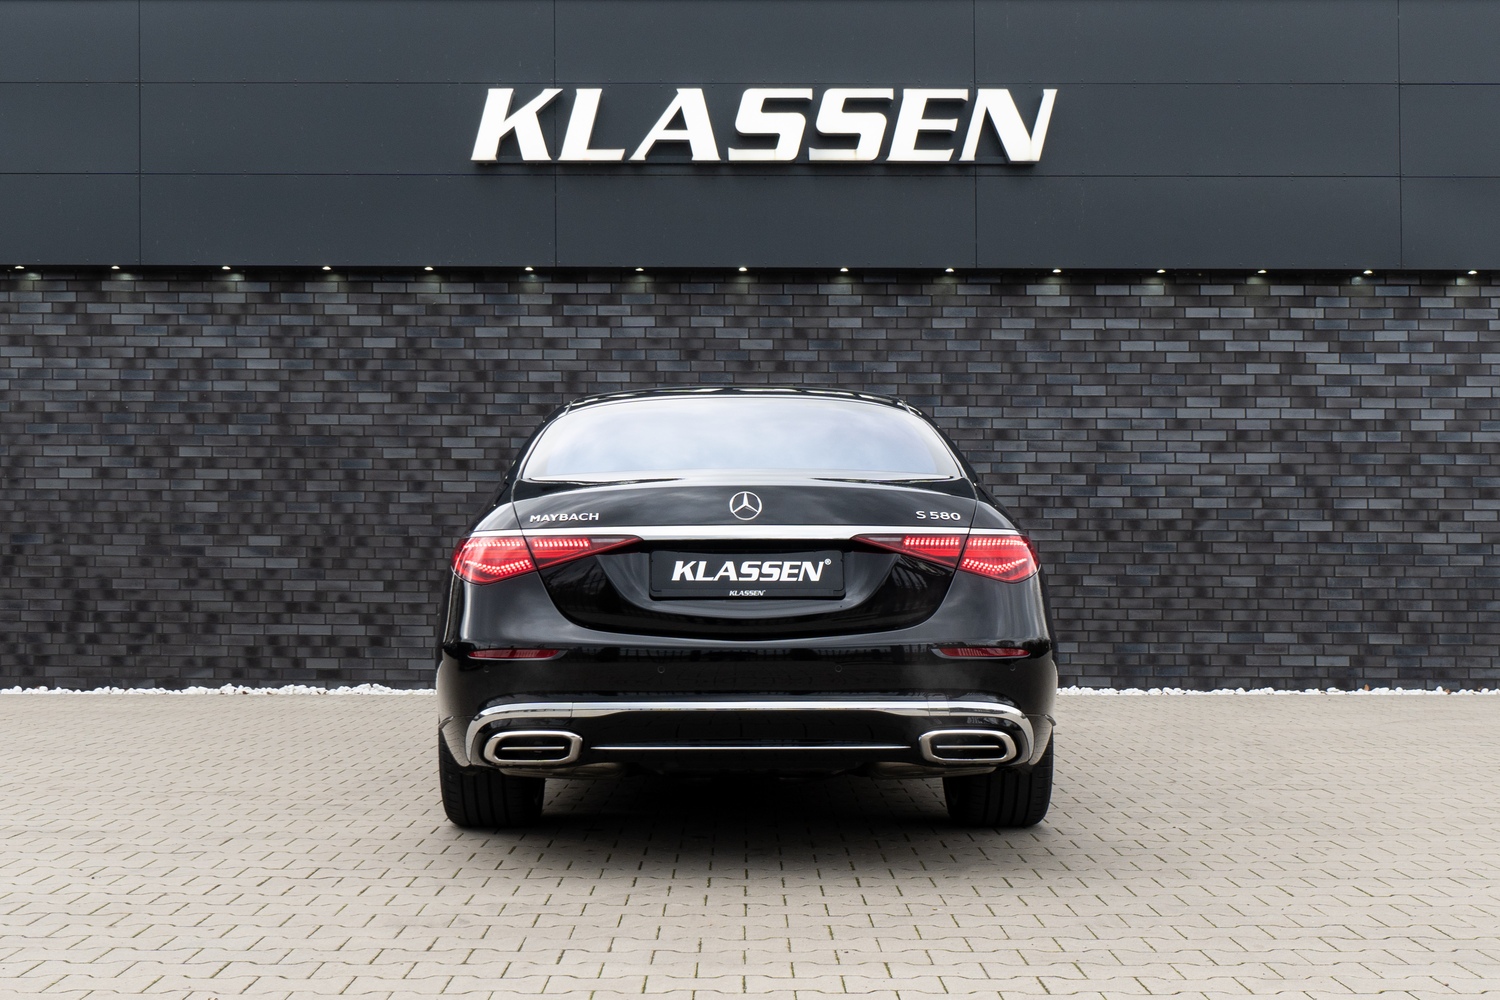 Die Mercedes-Maybach S-Klasse definiert ultimativen Luxus wie niemals zuvor. Hochwertigste Materialien, exzellente Verarbeitung, herausragender Komfort